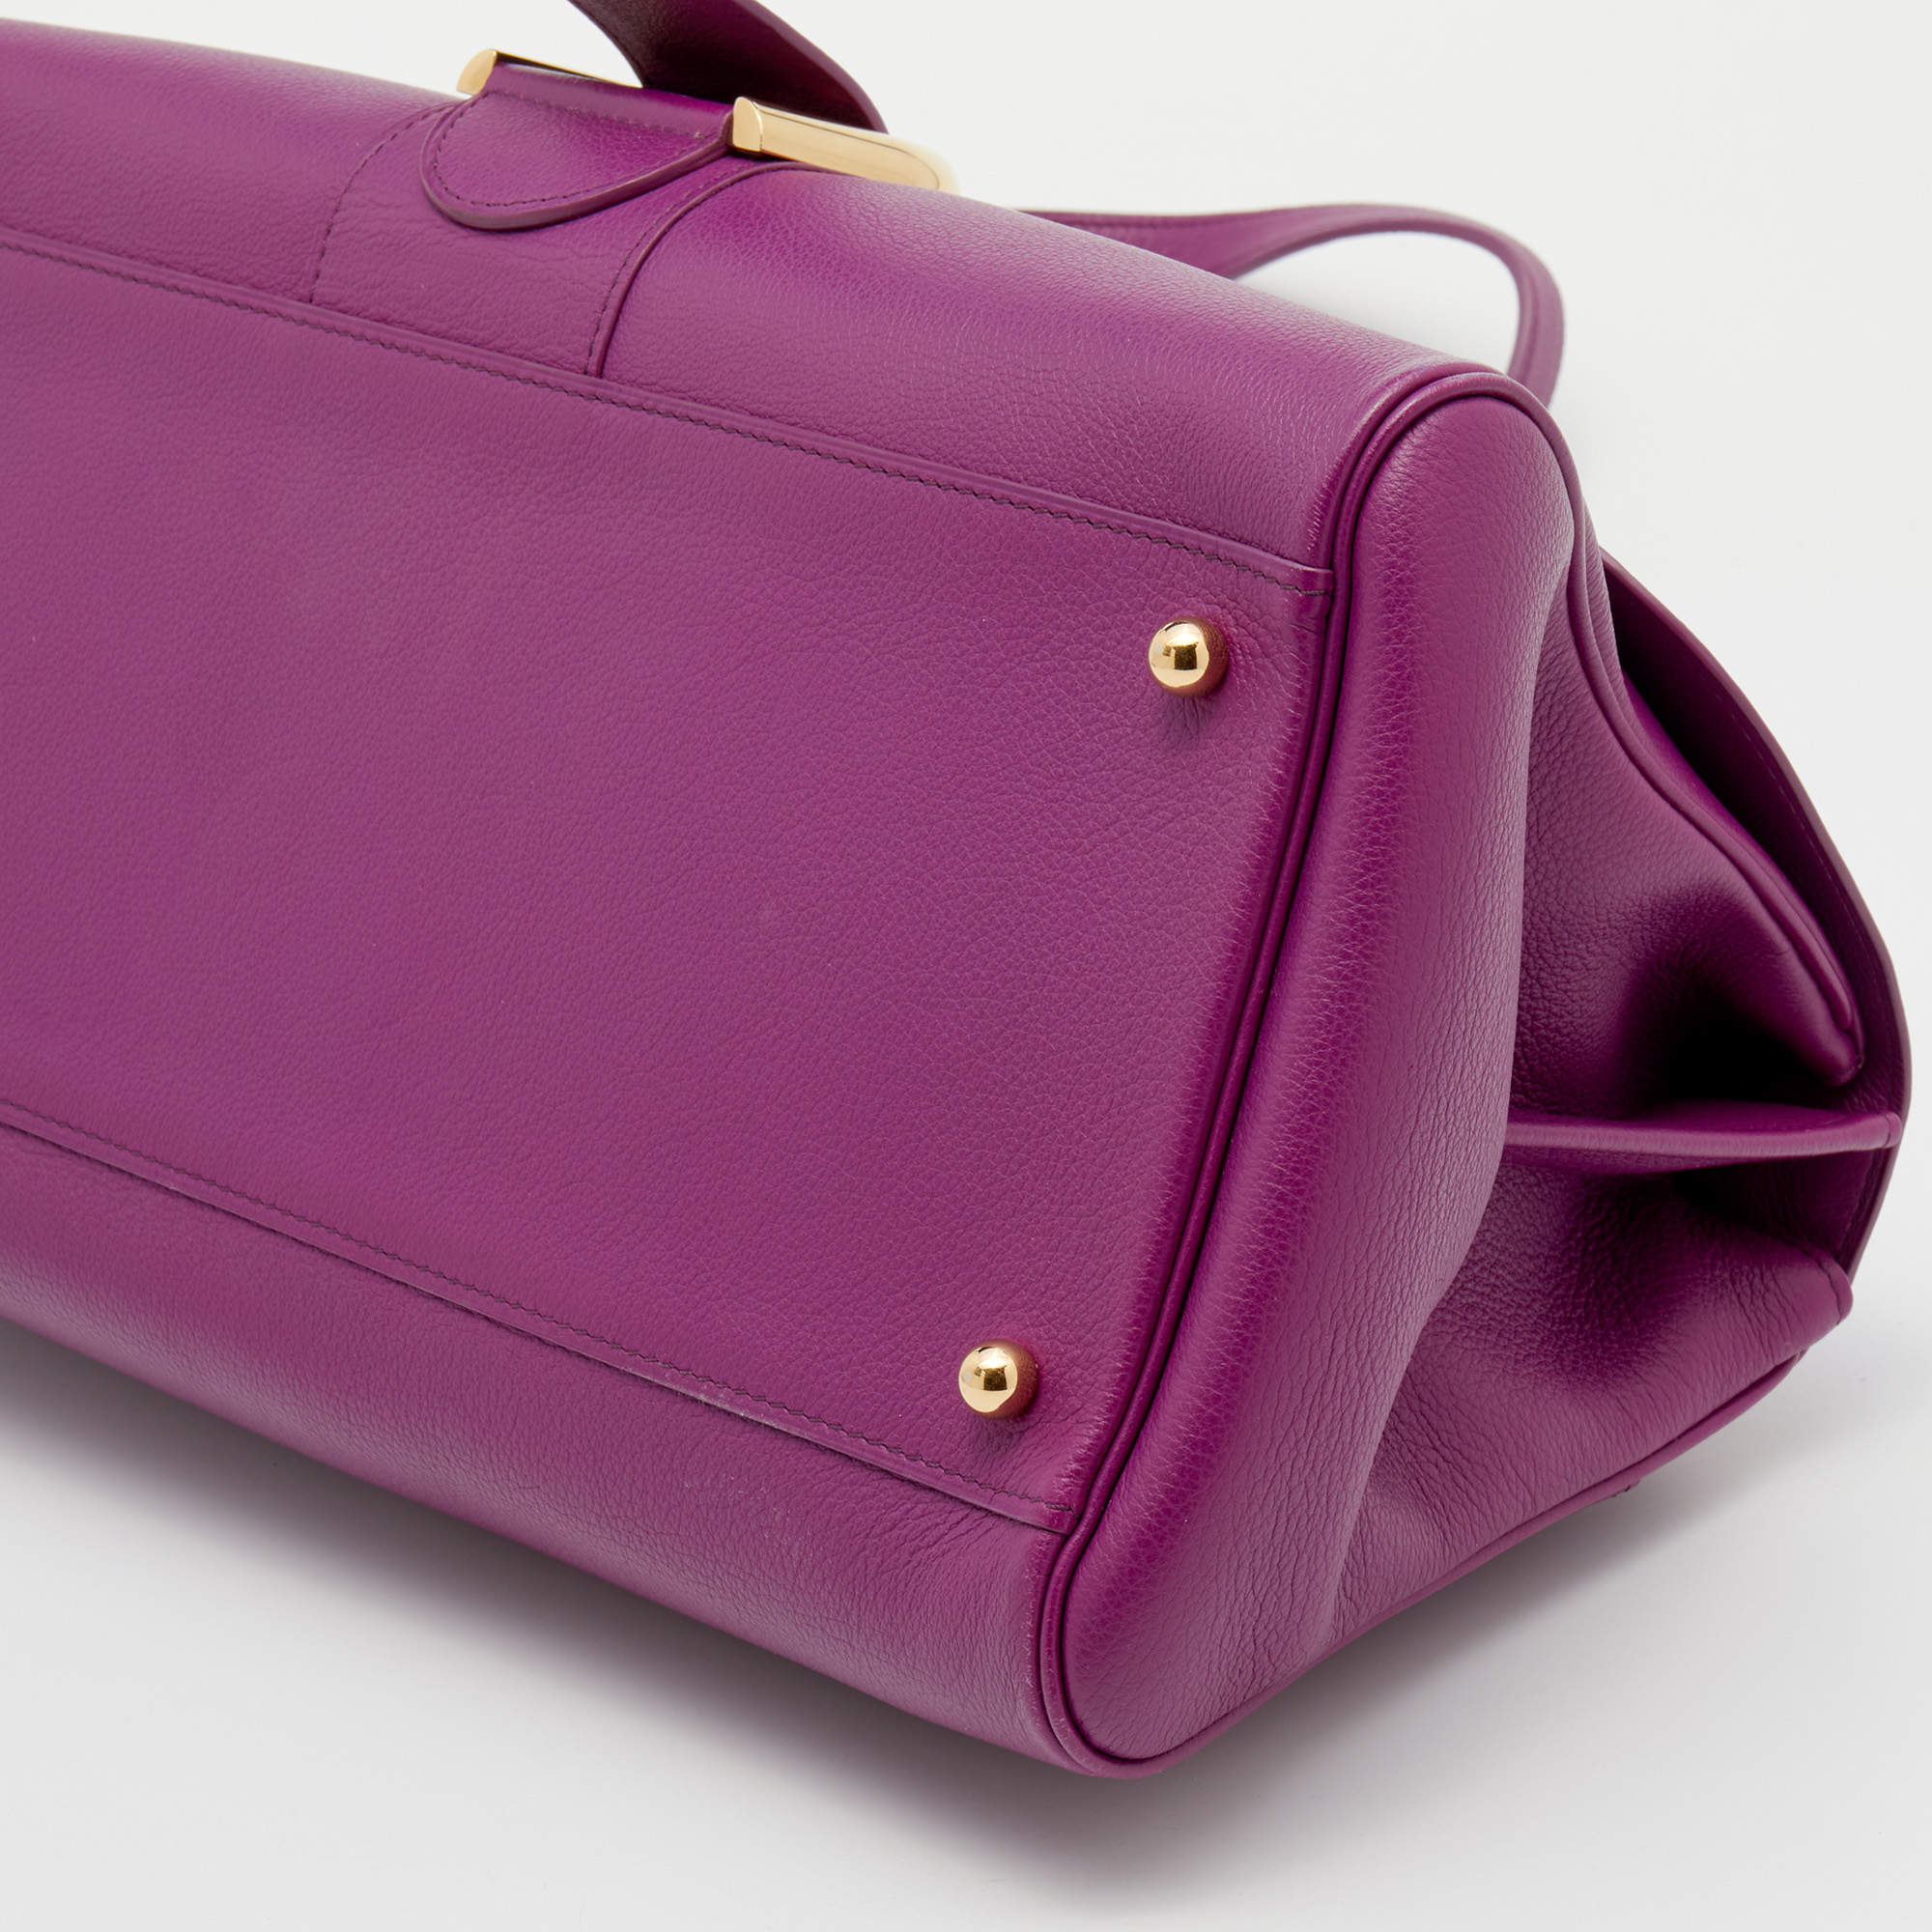 Delvaux Tempête MM - Purple Handle Bags, Handbags - DVX22694